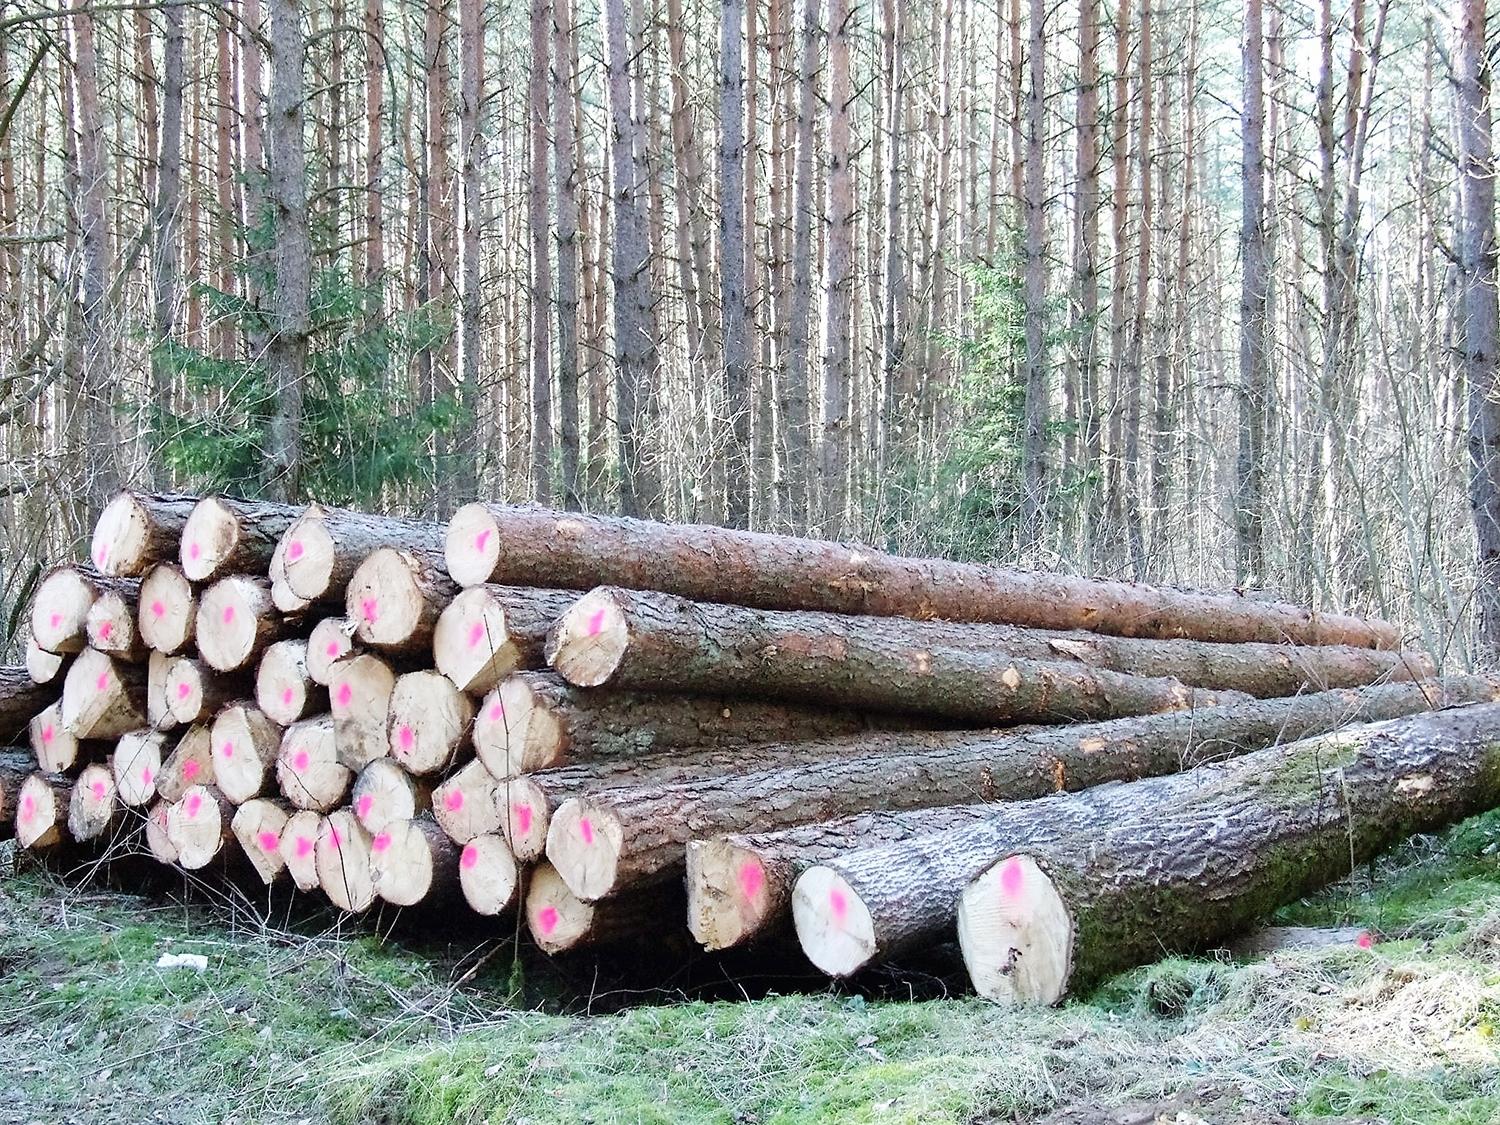 Miškų urėdijoje – nežinomybės nuotaikos / Didmeninė prekyba valstybiniuose miškuose pagaminta mediena ir miško kirtimo liekanomis bus vykdoma per elektroninę sistemą organizuojant aukcionus. Gedimino Nemunaičio nuotr.